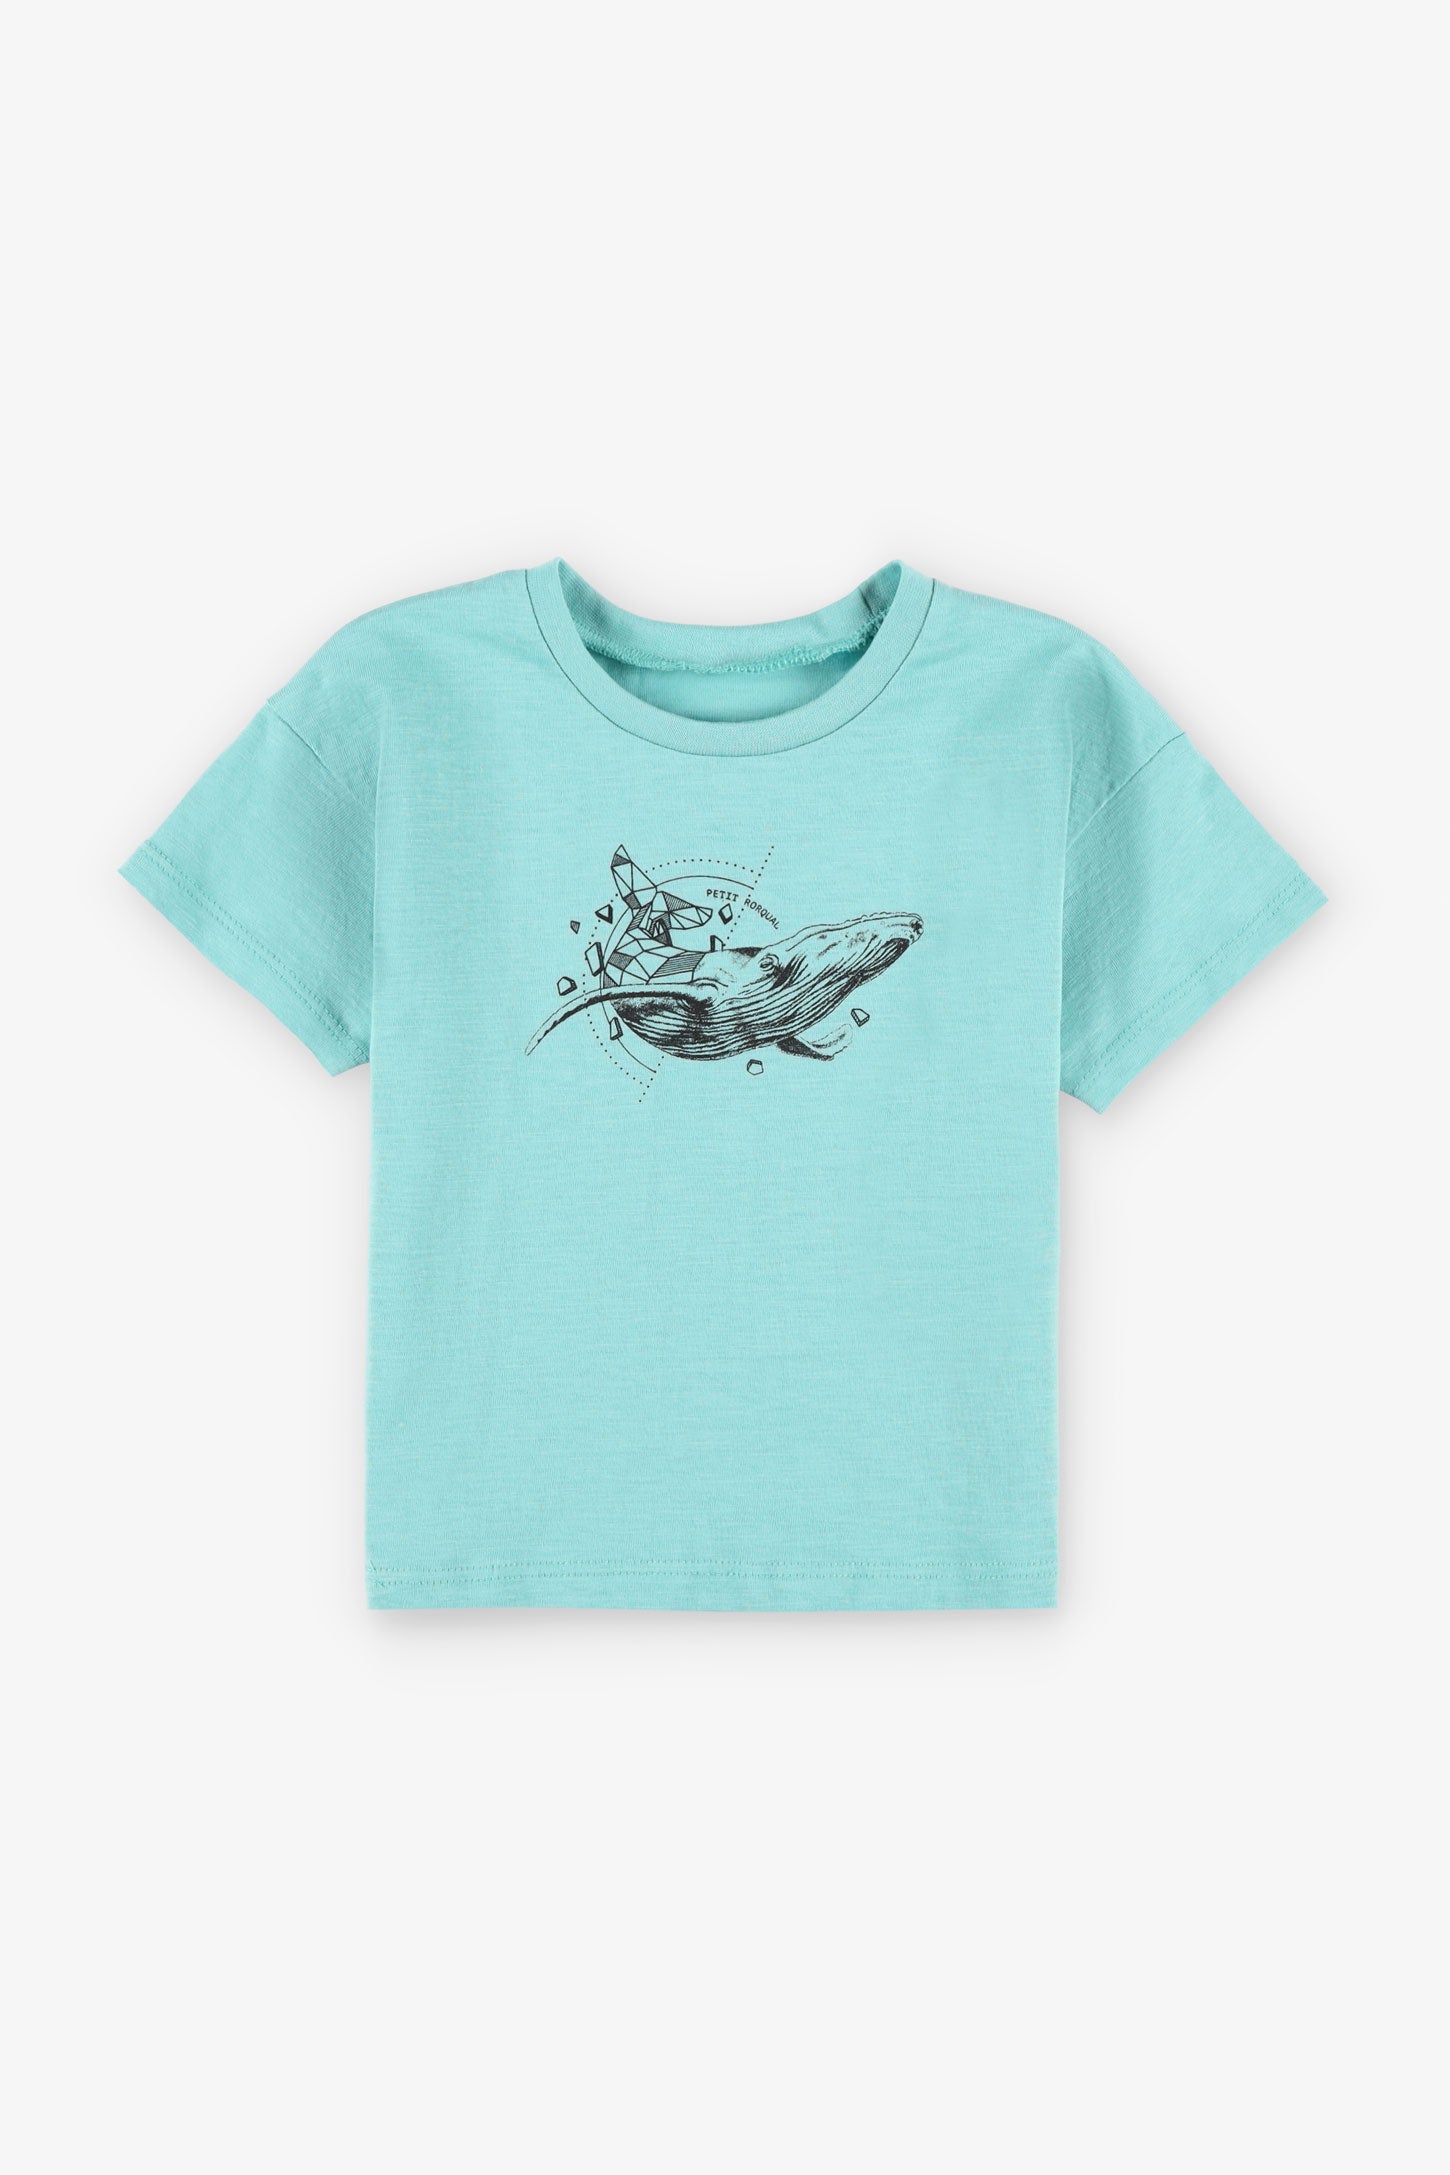 T-shirt coupe ample en coton, 2/15$ - Bébé garçon && TURQUOISE